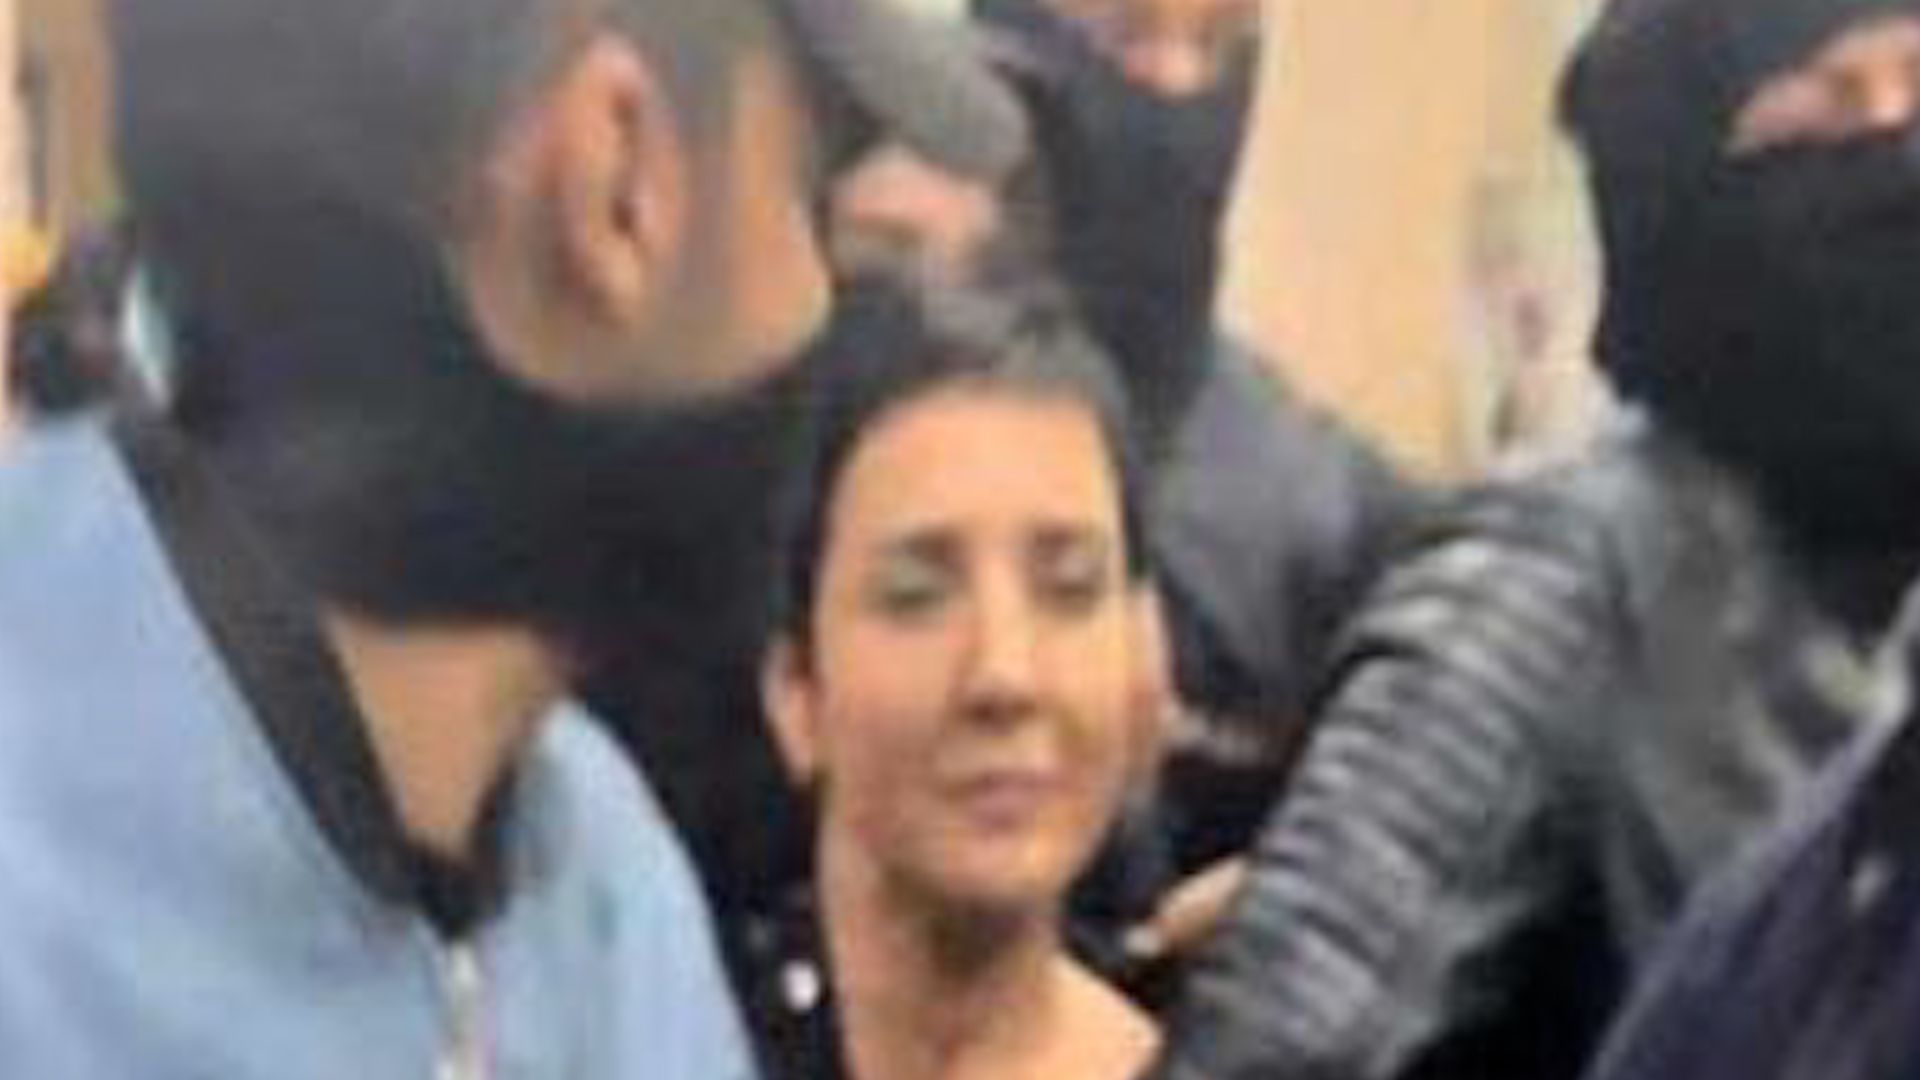 Vermummte Polizisten stürmen Gericht und nehmen tunesische Anwältin fest